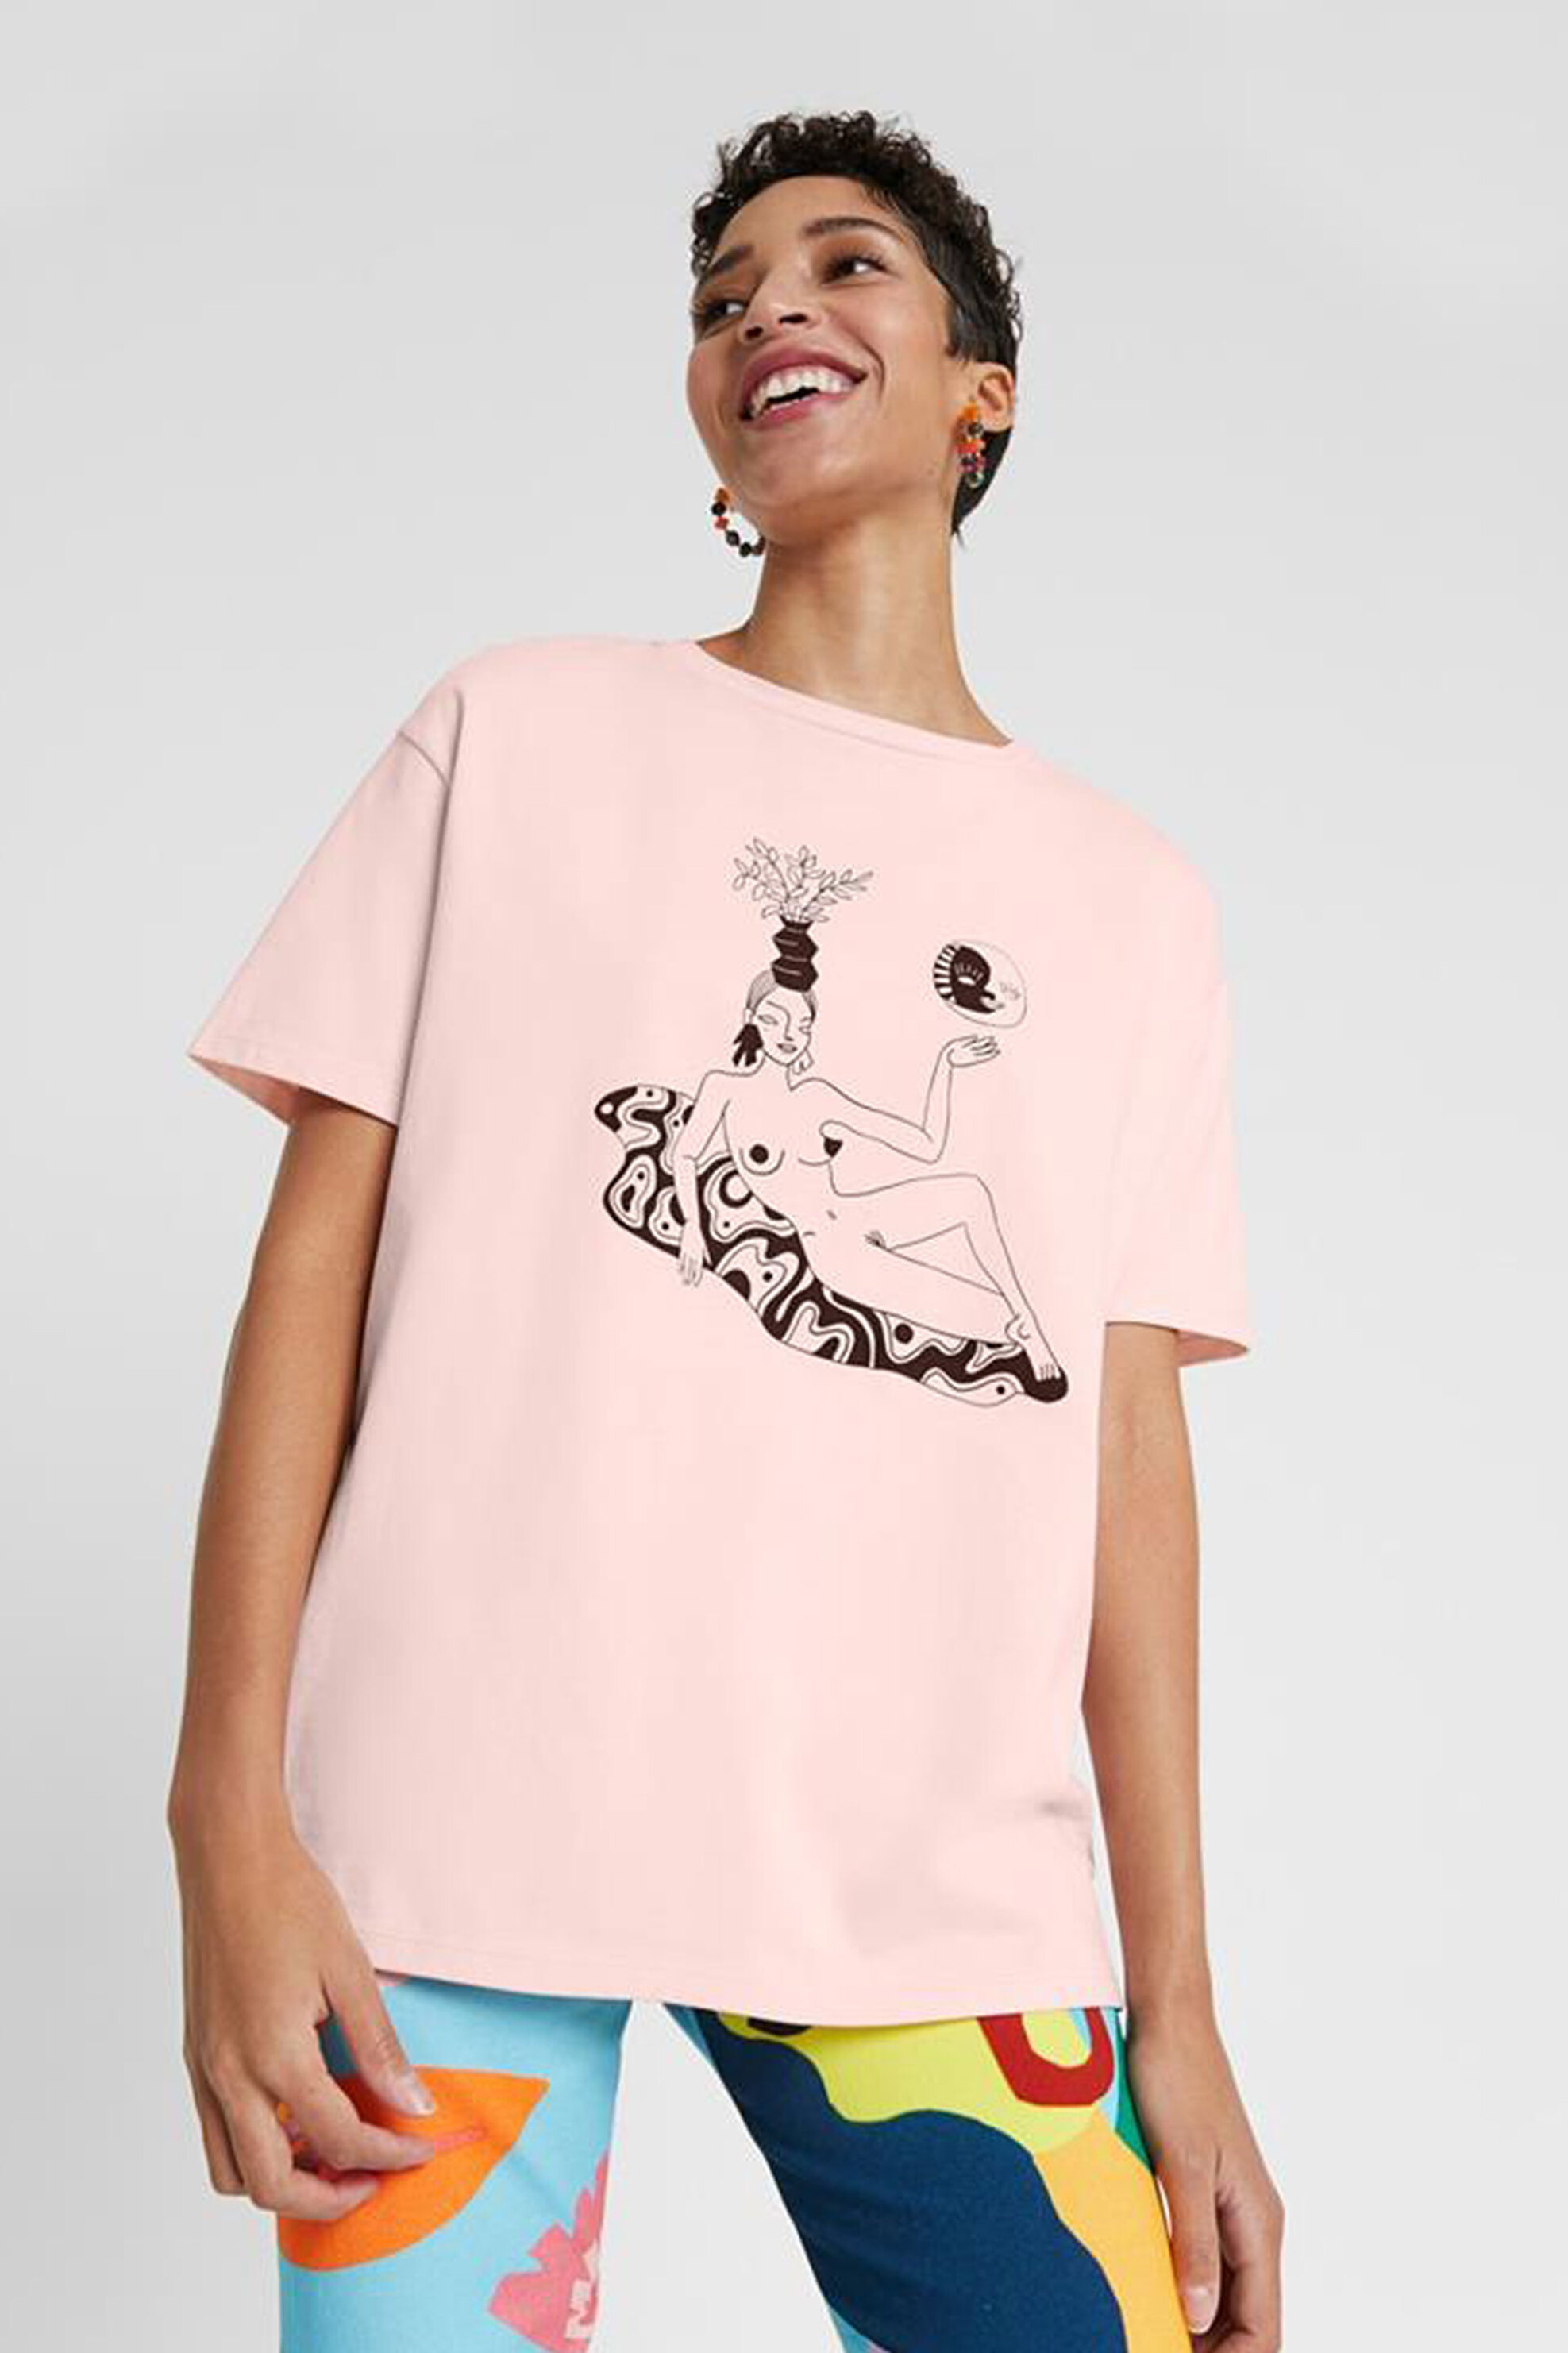 Γυναίκα > ΡΟΥΧΑ > Tops > T-Shirts Desigual γυναικεία μπλούζα με graphic print "Toulouse" - 20SWTKDF Ροζ